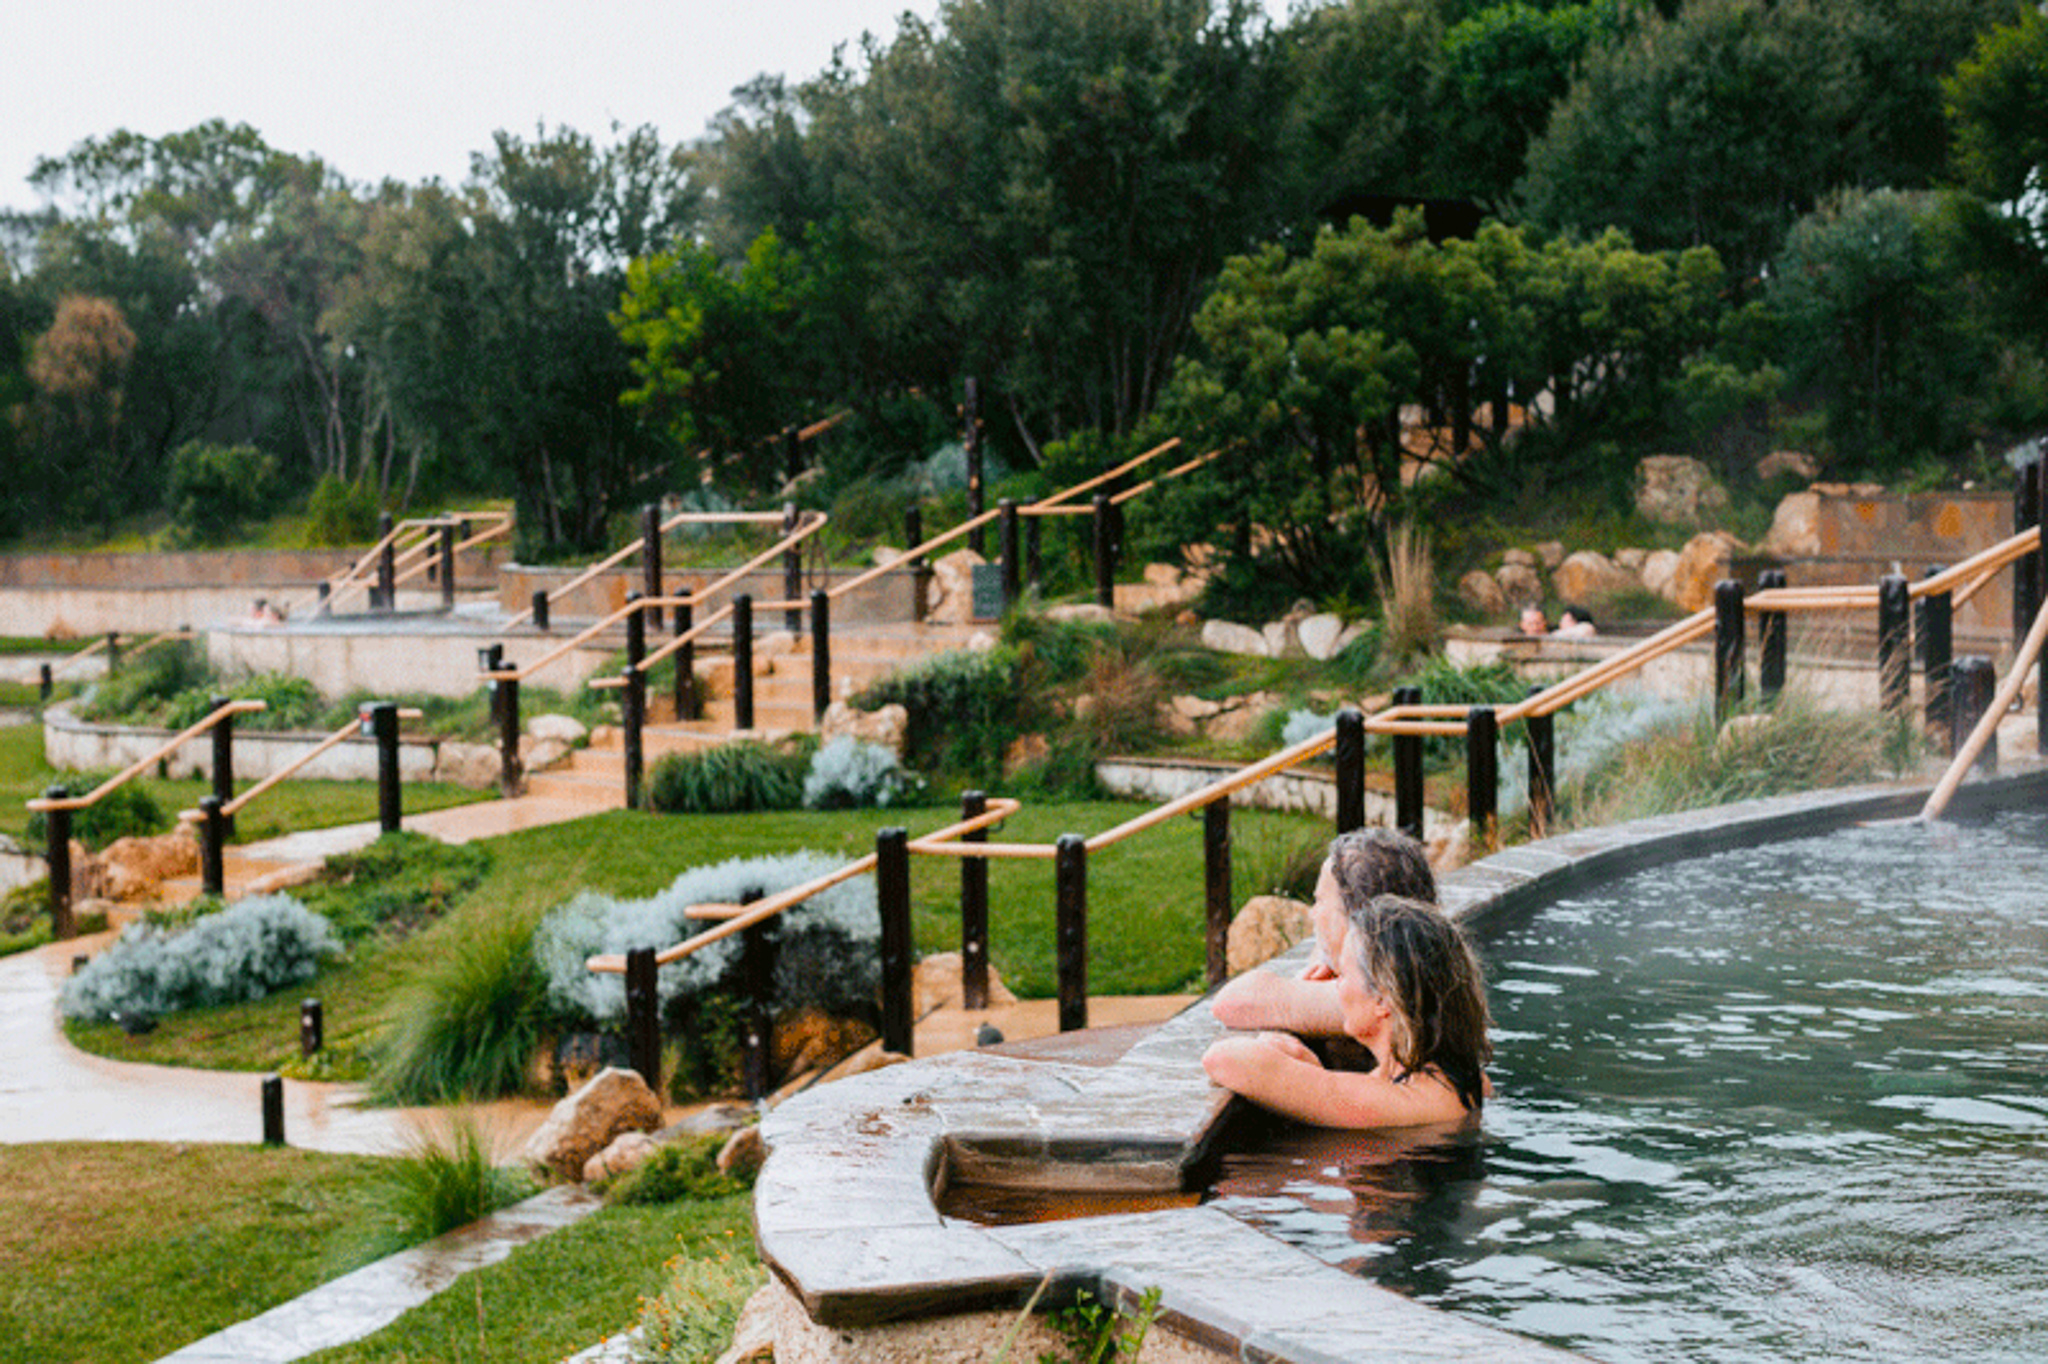 Peninsula hot springs